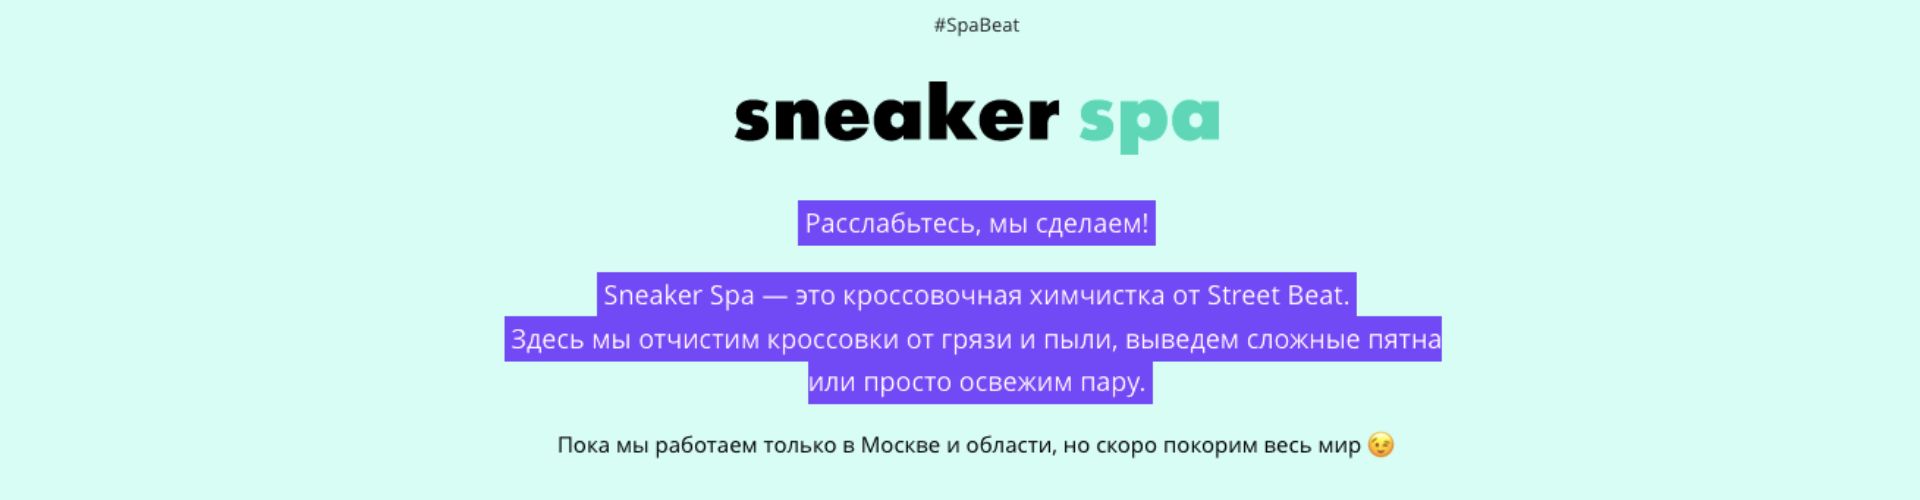 Sneaker Spa в Street Beat